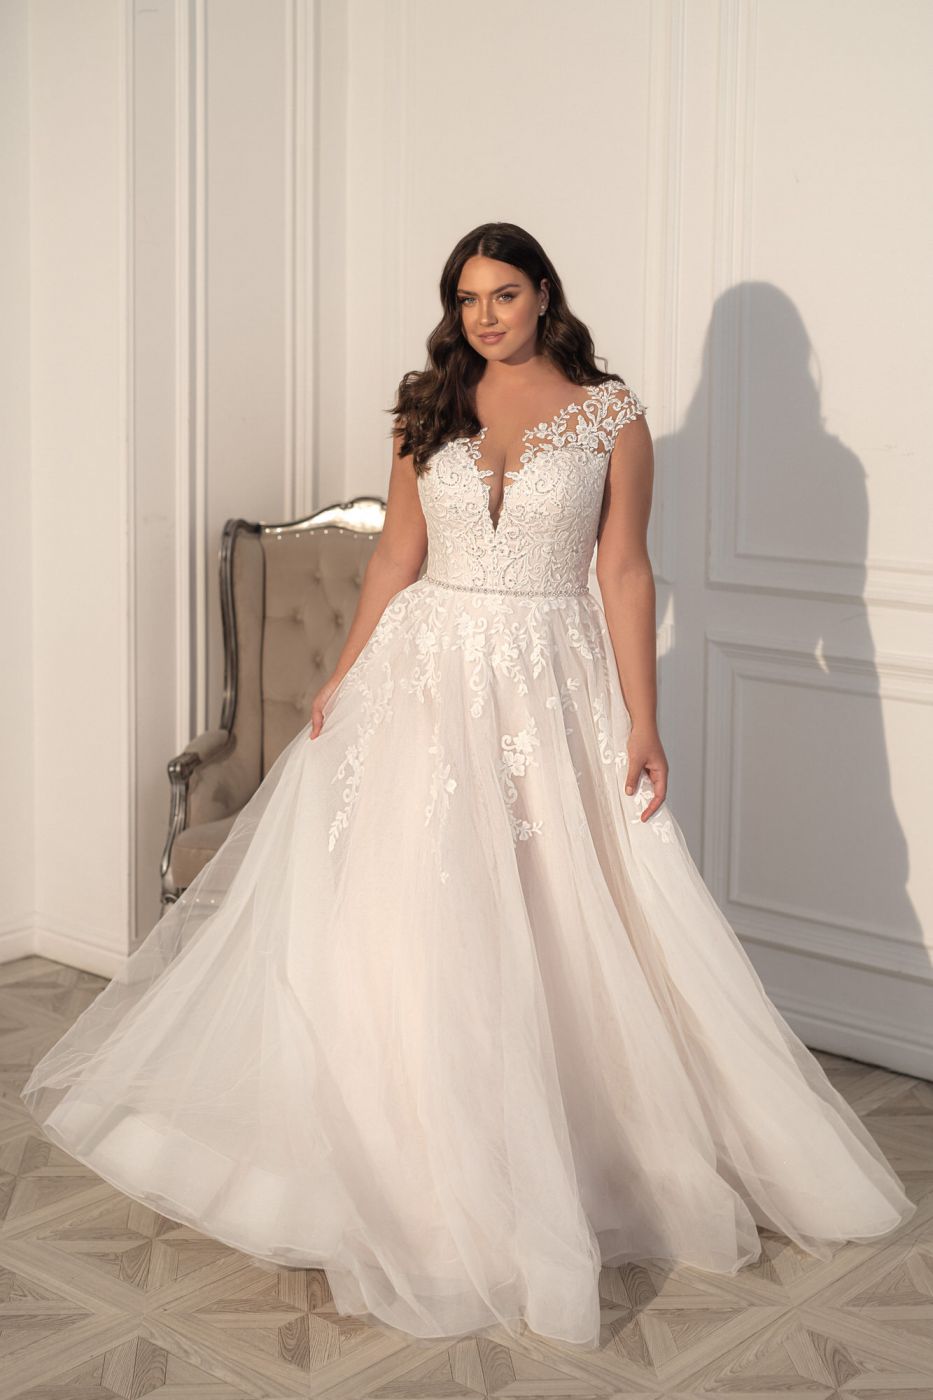 Пышное свадебное платье в теплом белом оттенке с кружевным декором и мерцающими акцентами Арт.043